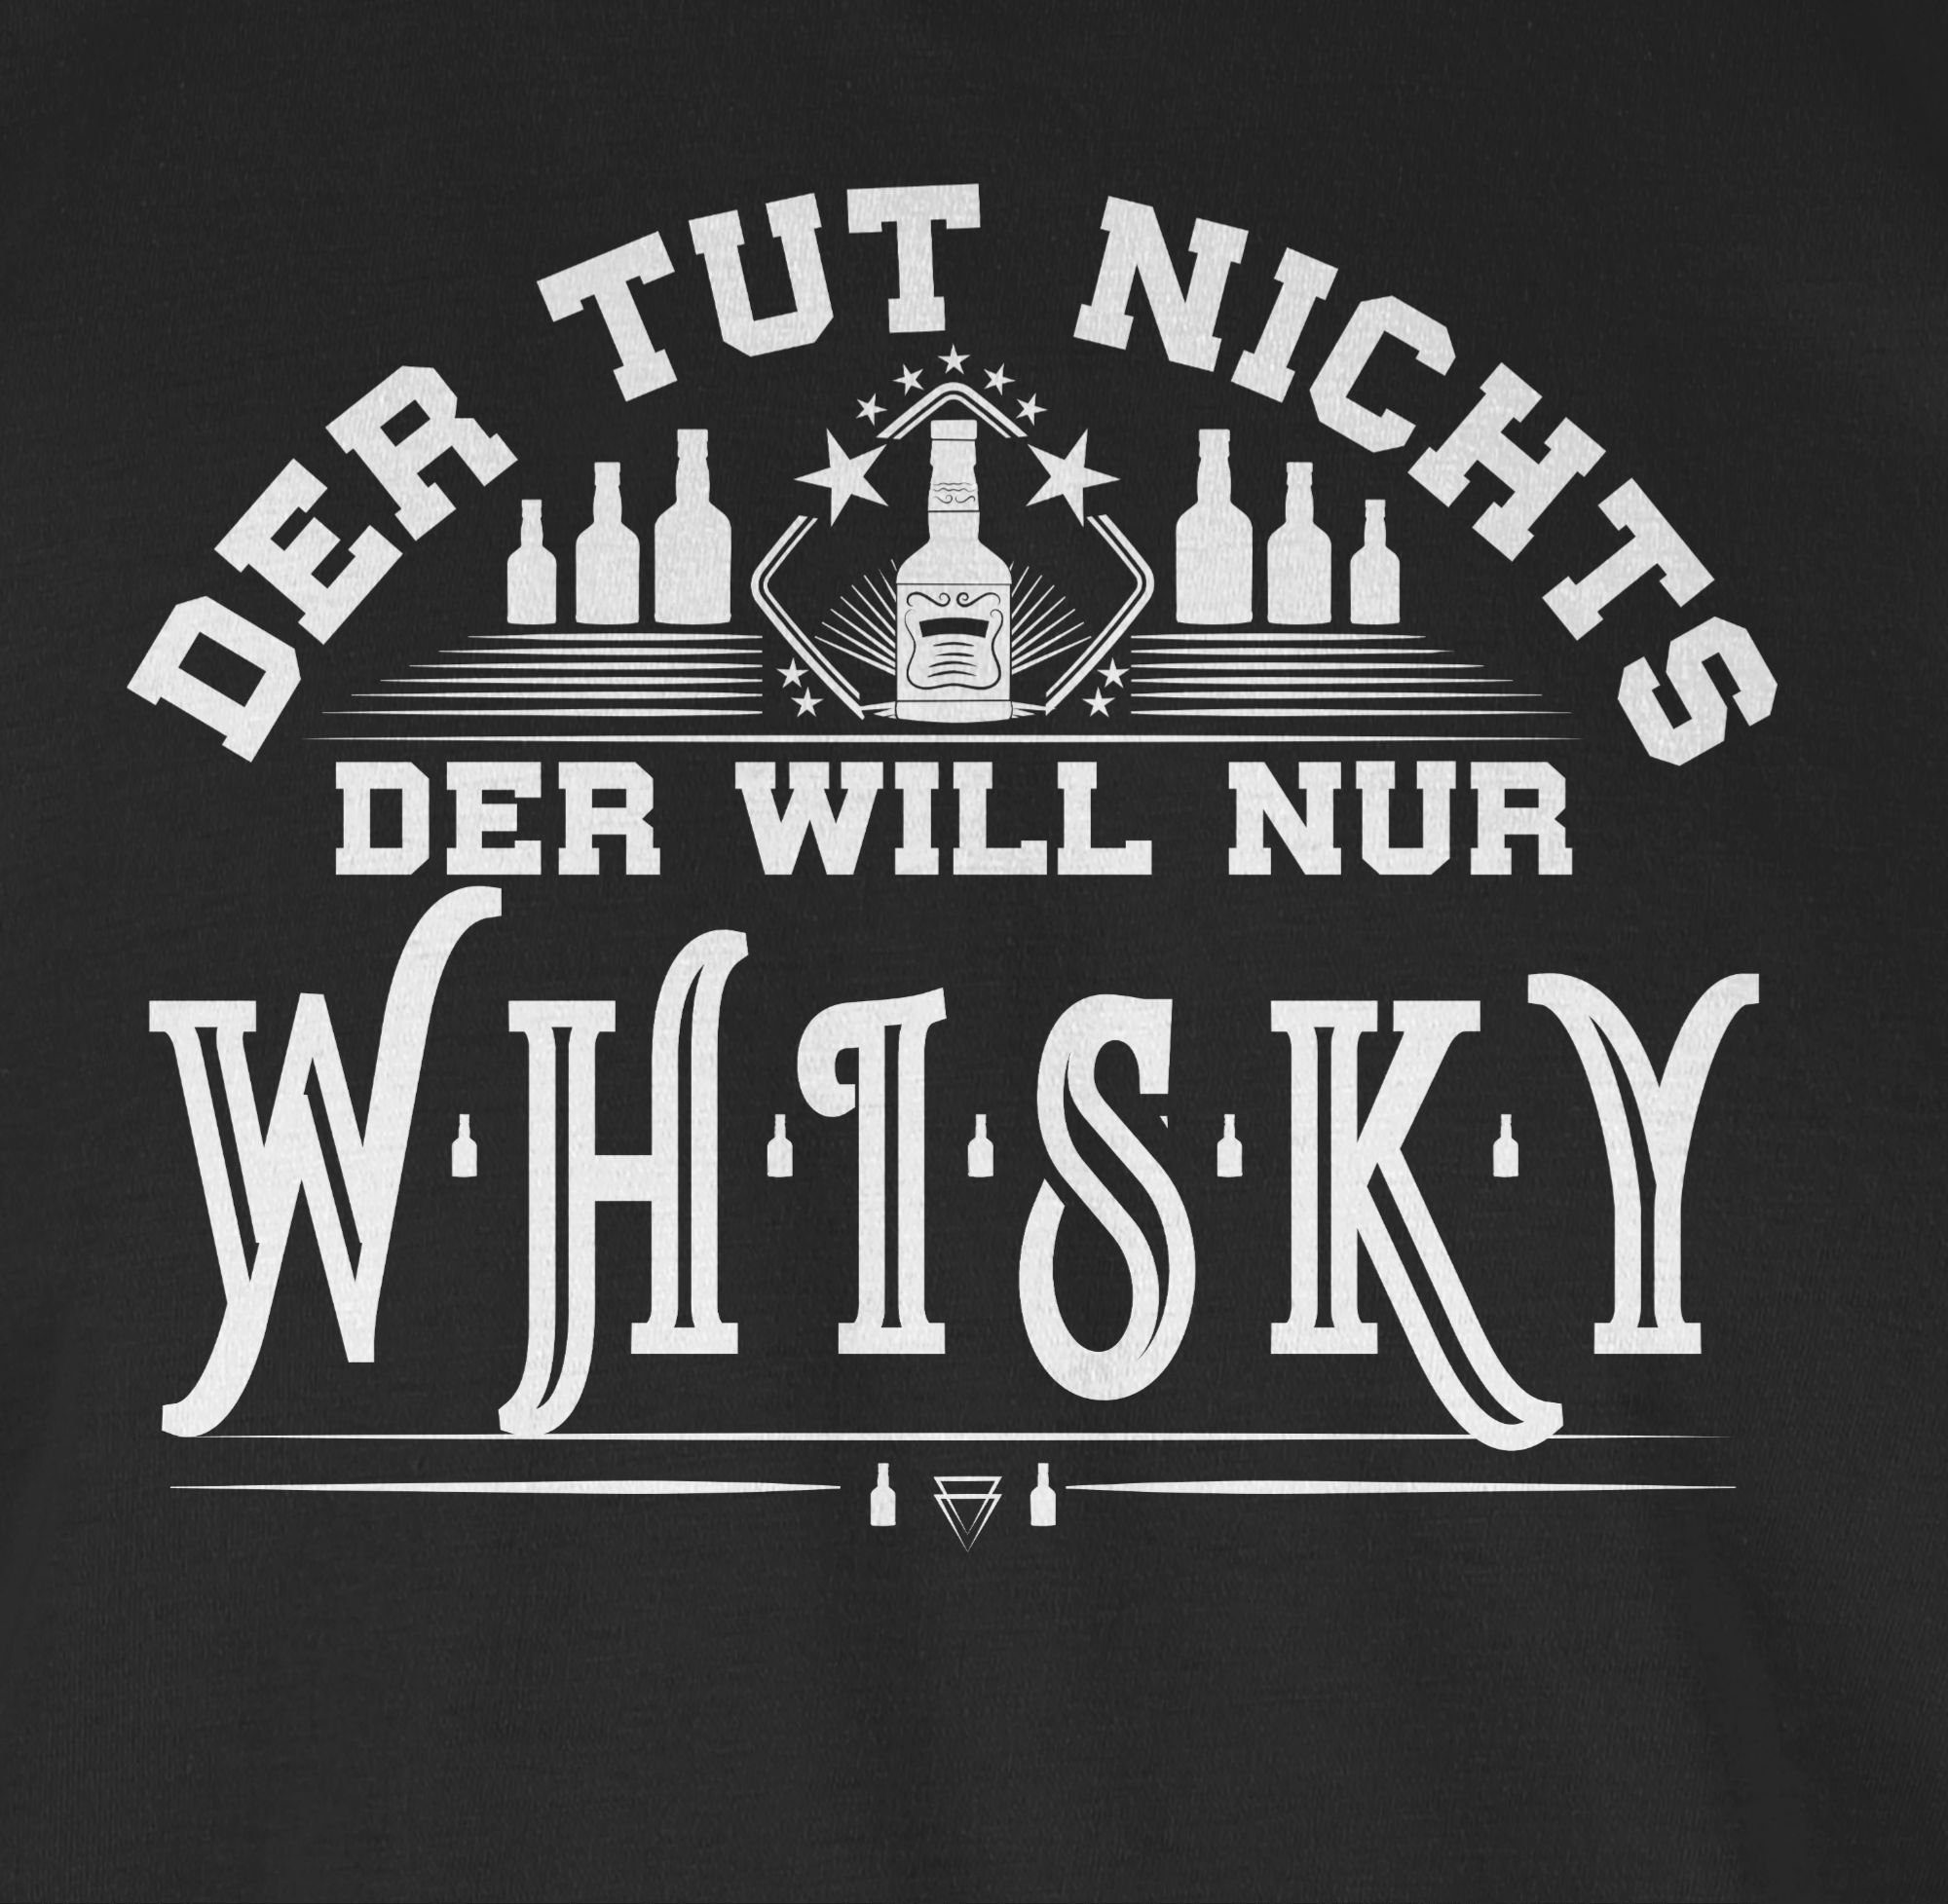 Spruch Whiskyliebhaber will Geschenk Shirtracer 01 nur mit Whisky Schwarz Sprüche T-Shirt Der Statement